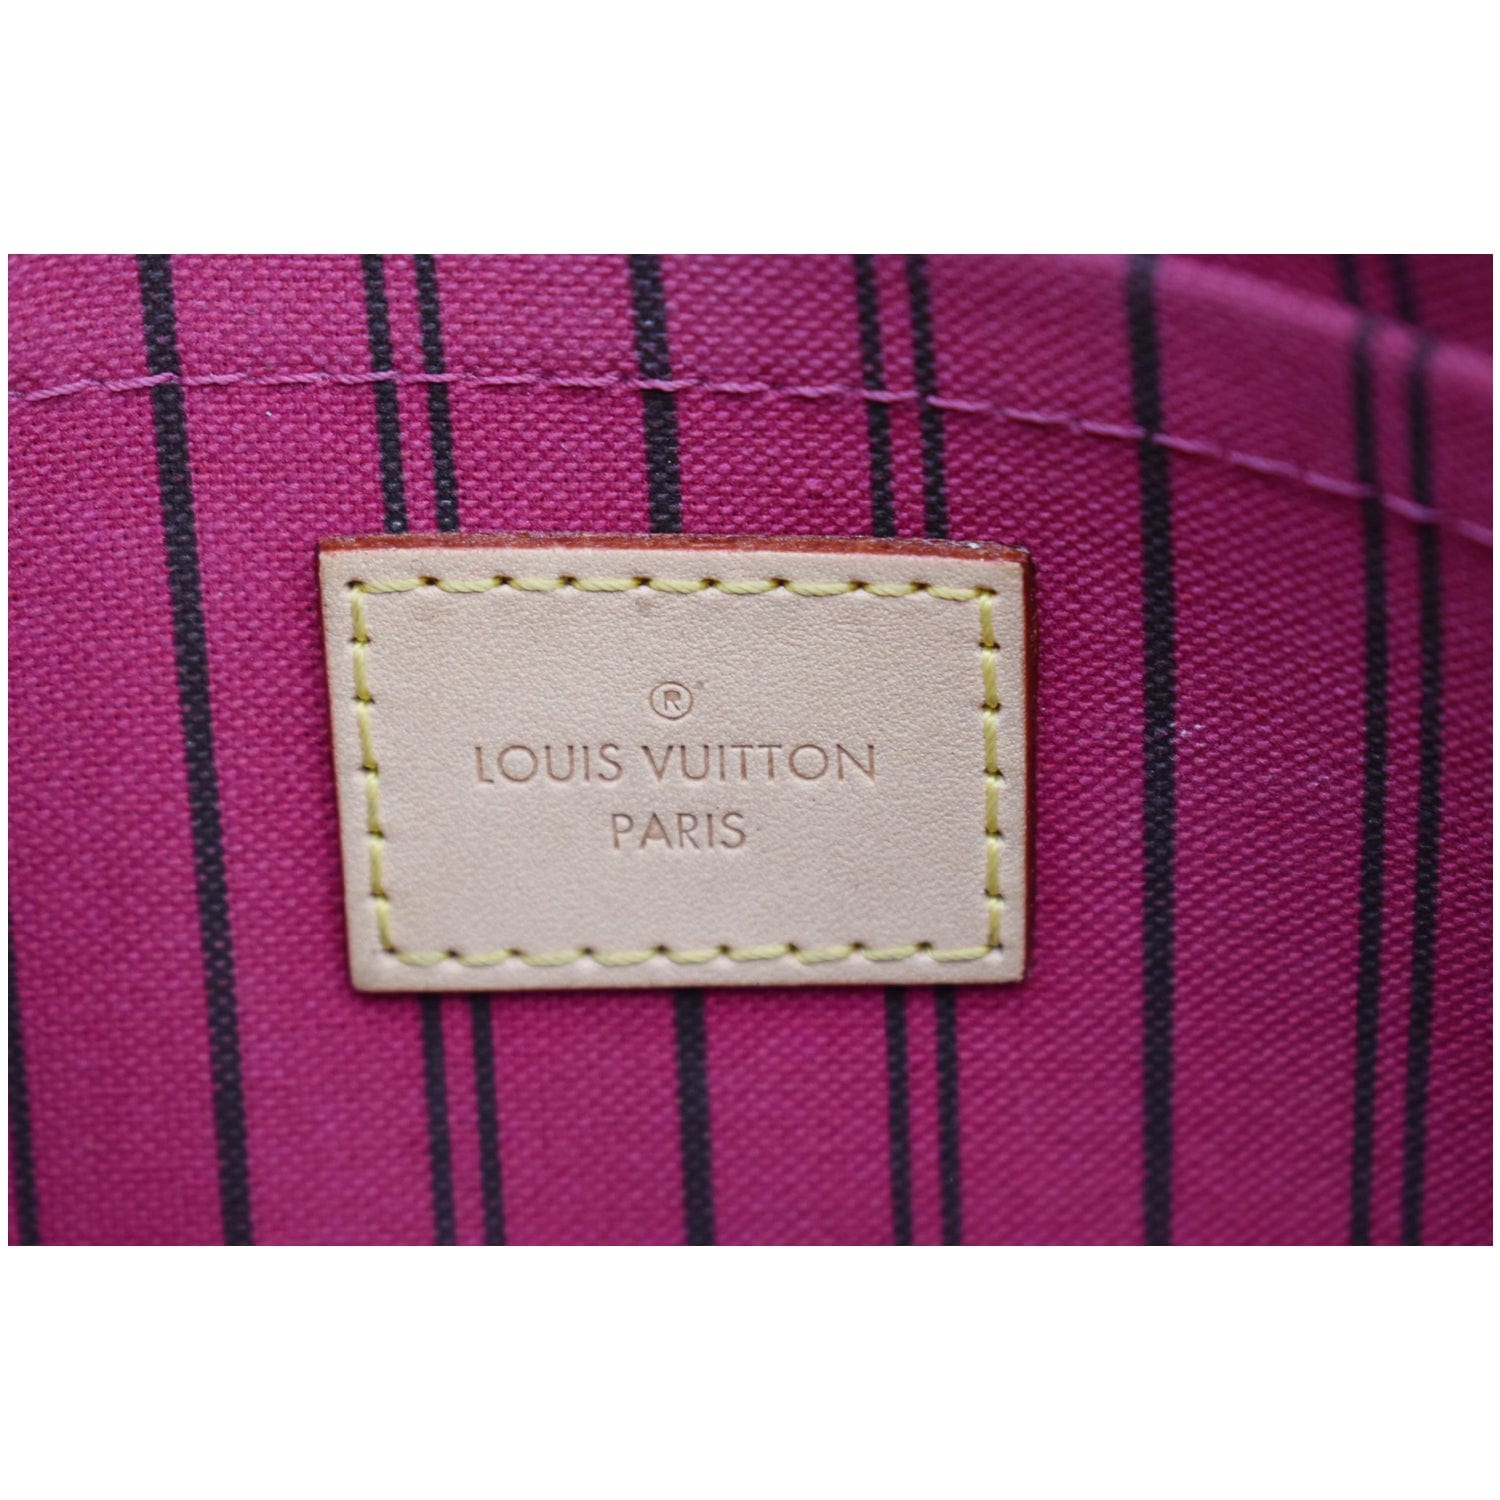 Louis Vuitton Pouch in Purple Paillette and Black Canvas